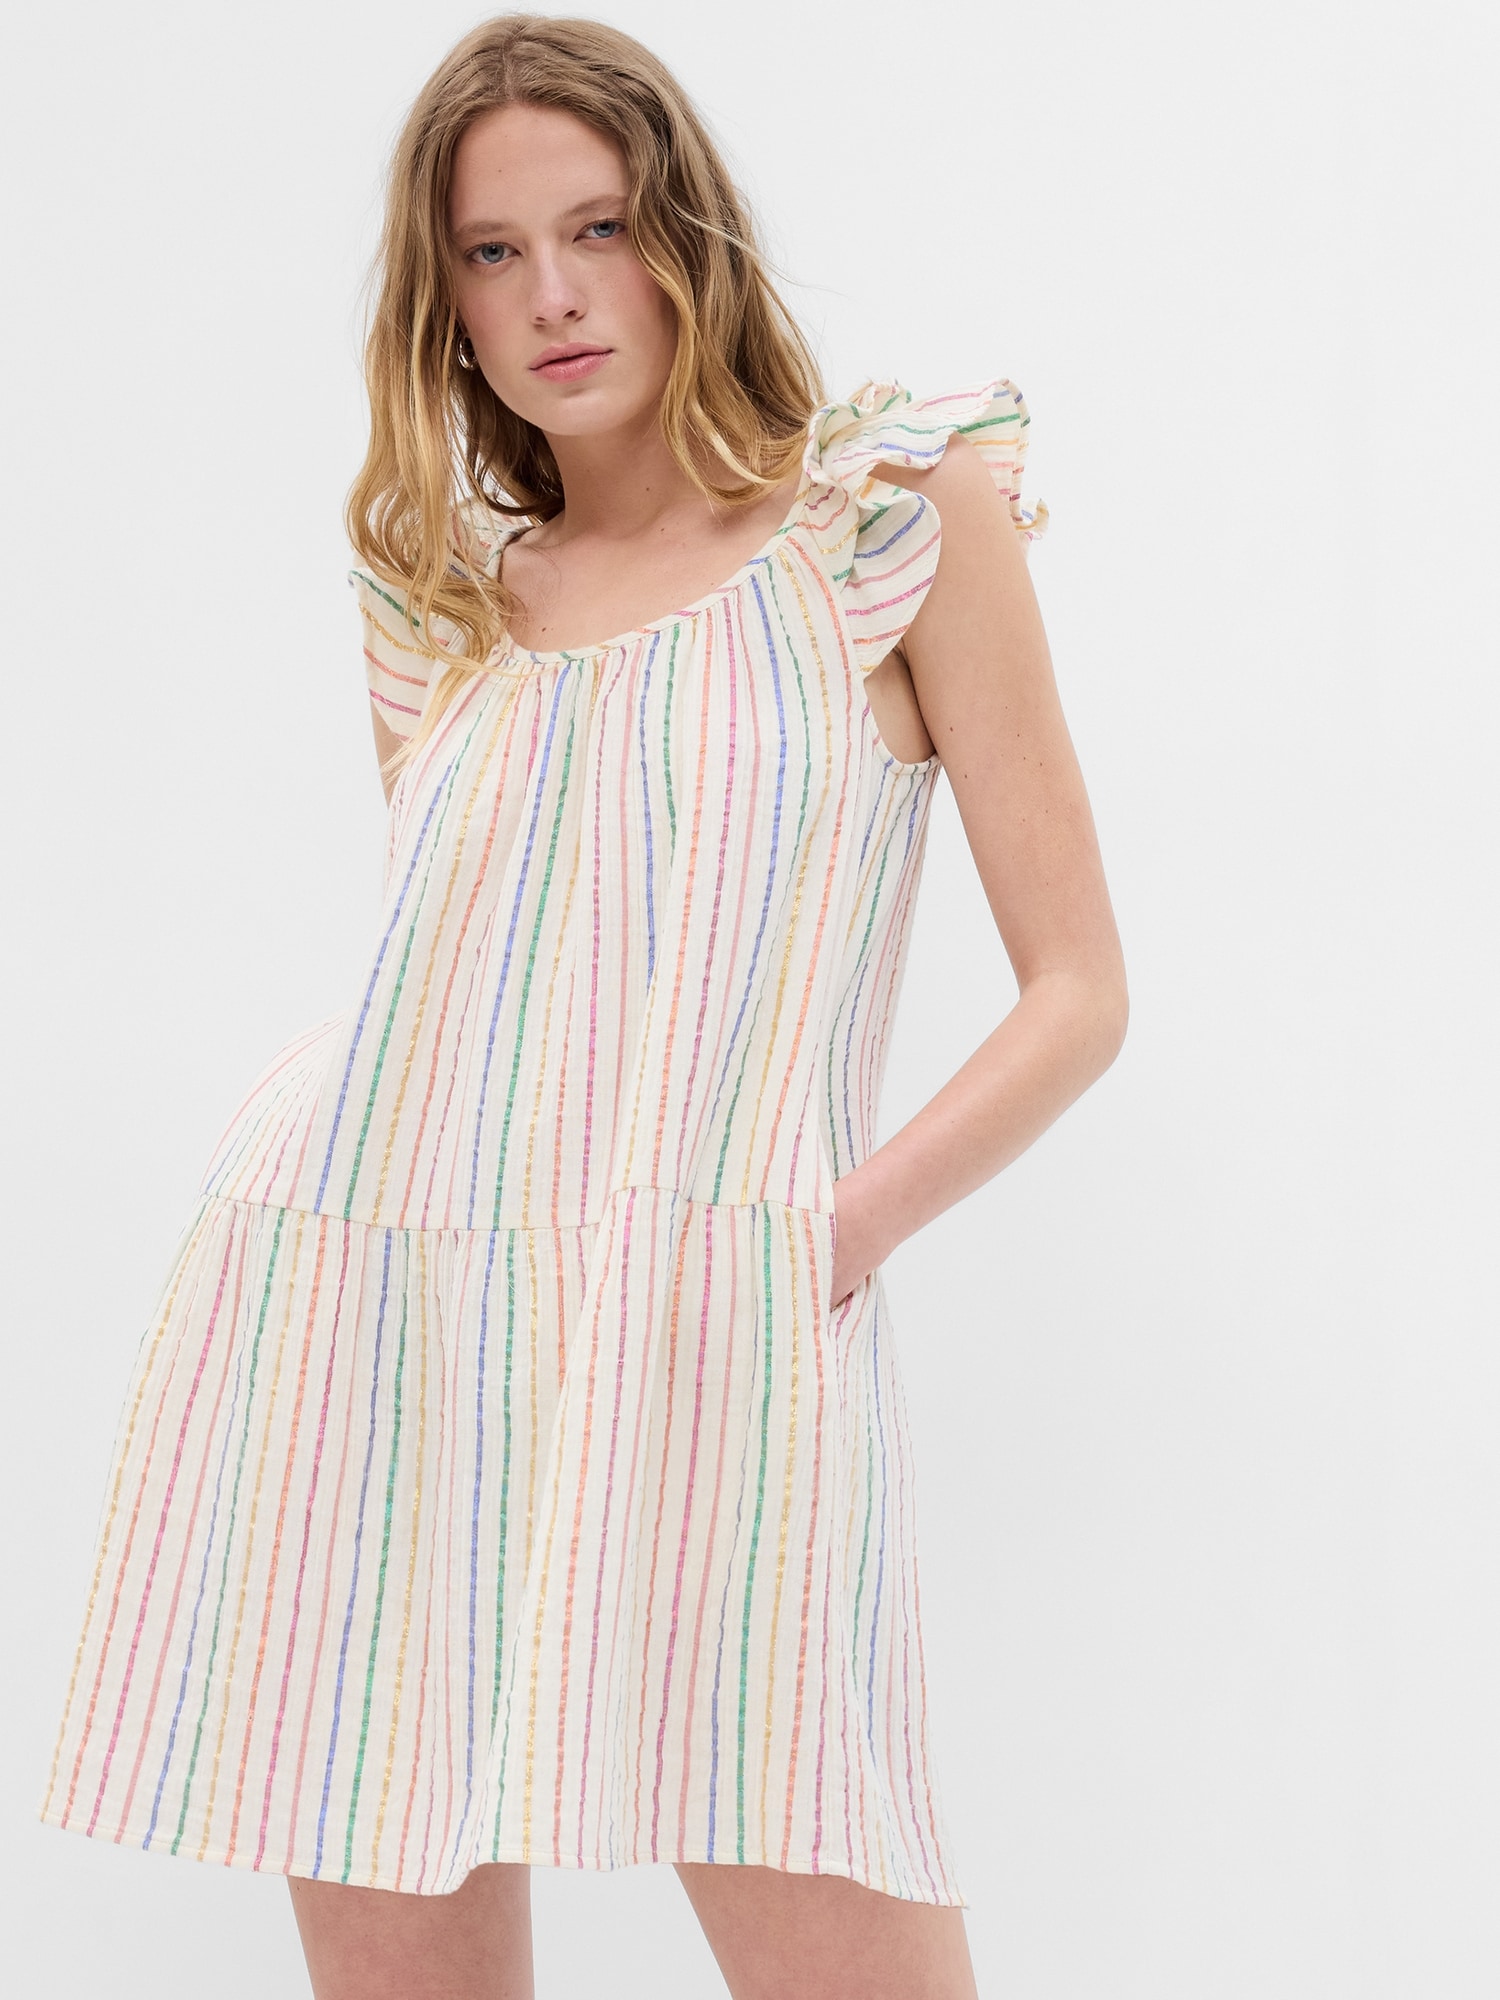 GAP Striped Mini Dress - Women